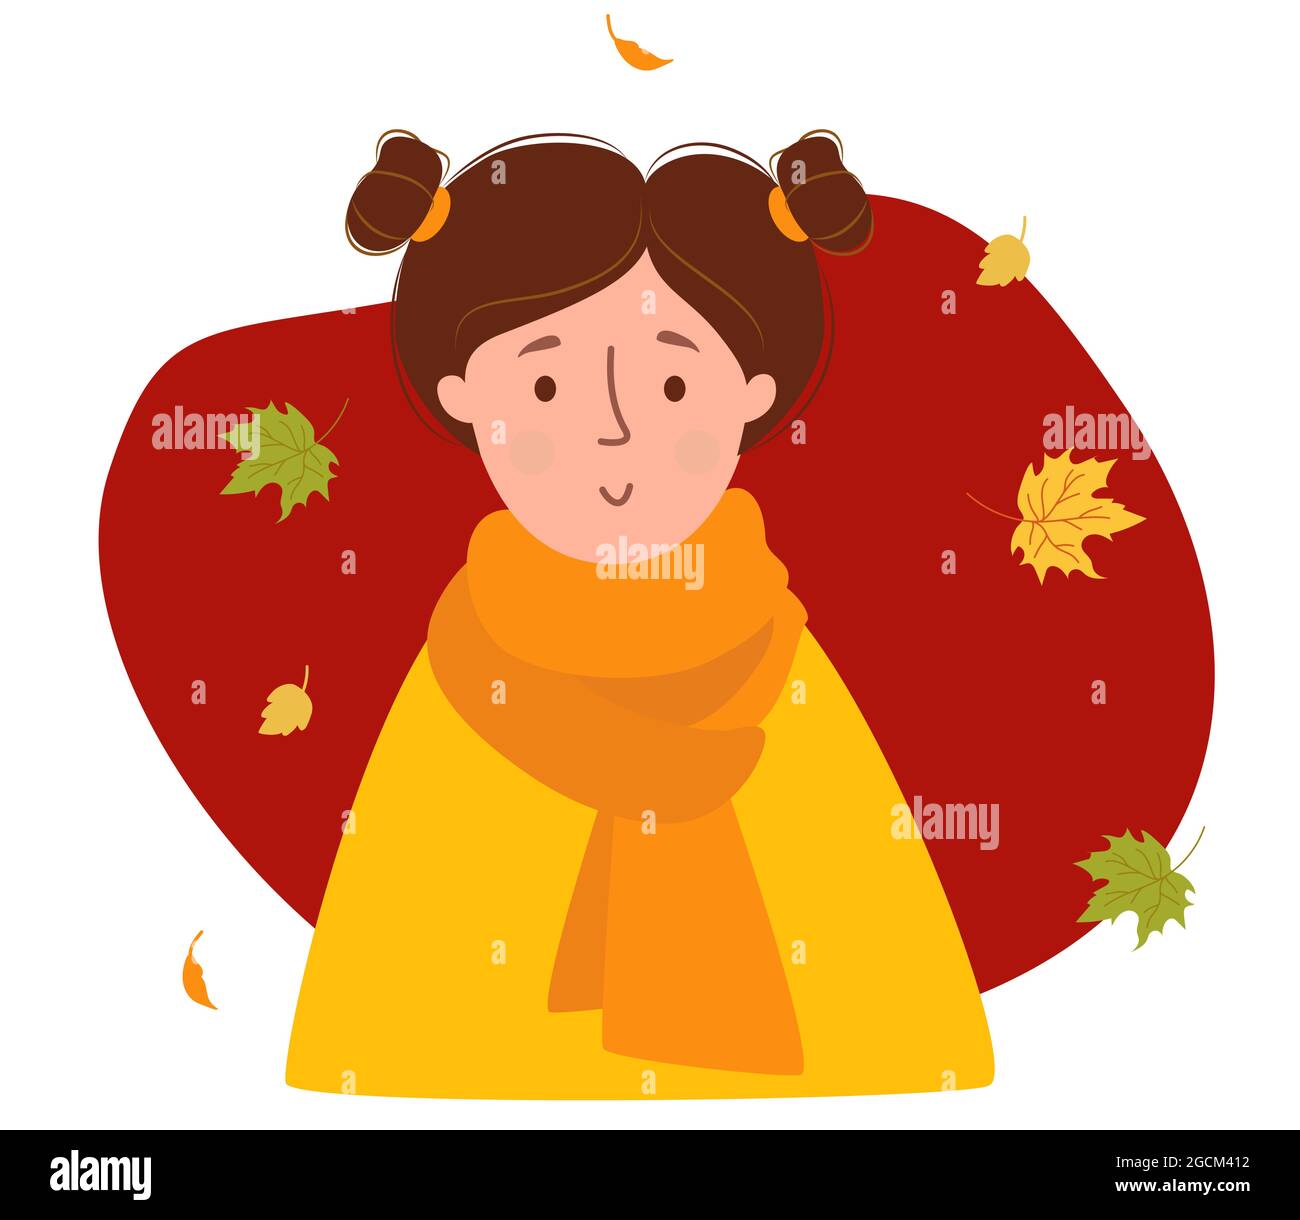 Porträt eines Herbstmädchen. Nette Frau mit Frisur mit Herbstblättern. Vektorgrafik. Charakter im flachen Stil für Herbstdesign und Dekoration Stock Vektor